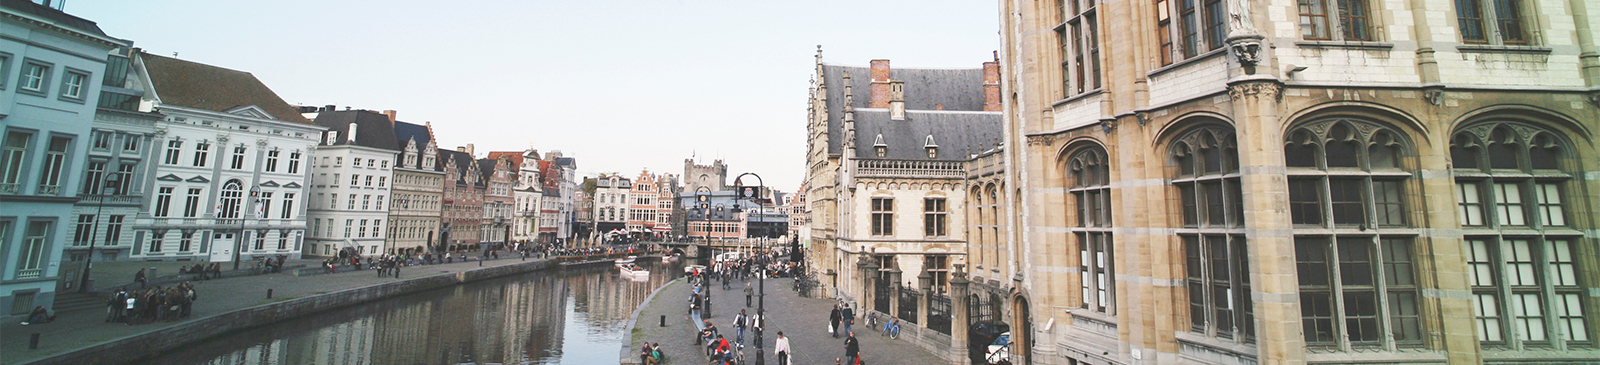 Zicht op korenlei Gent - Photo by roya ann miller on Unsplash